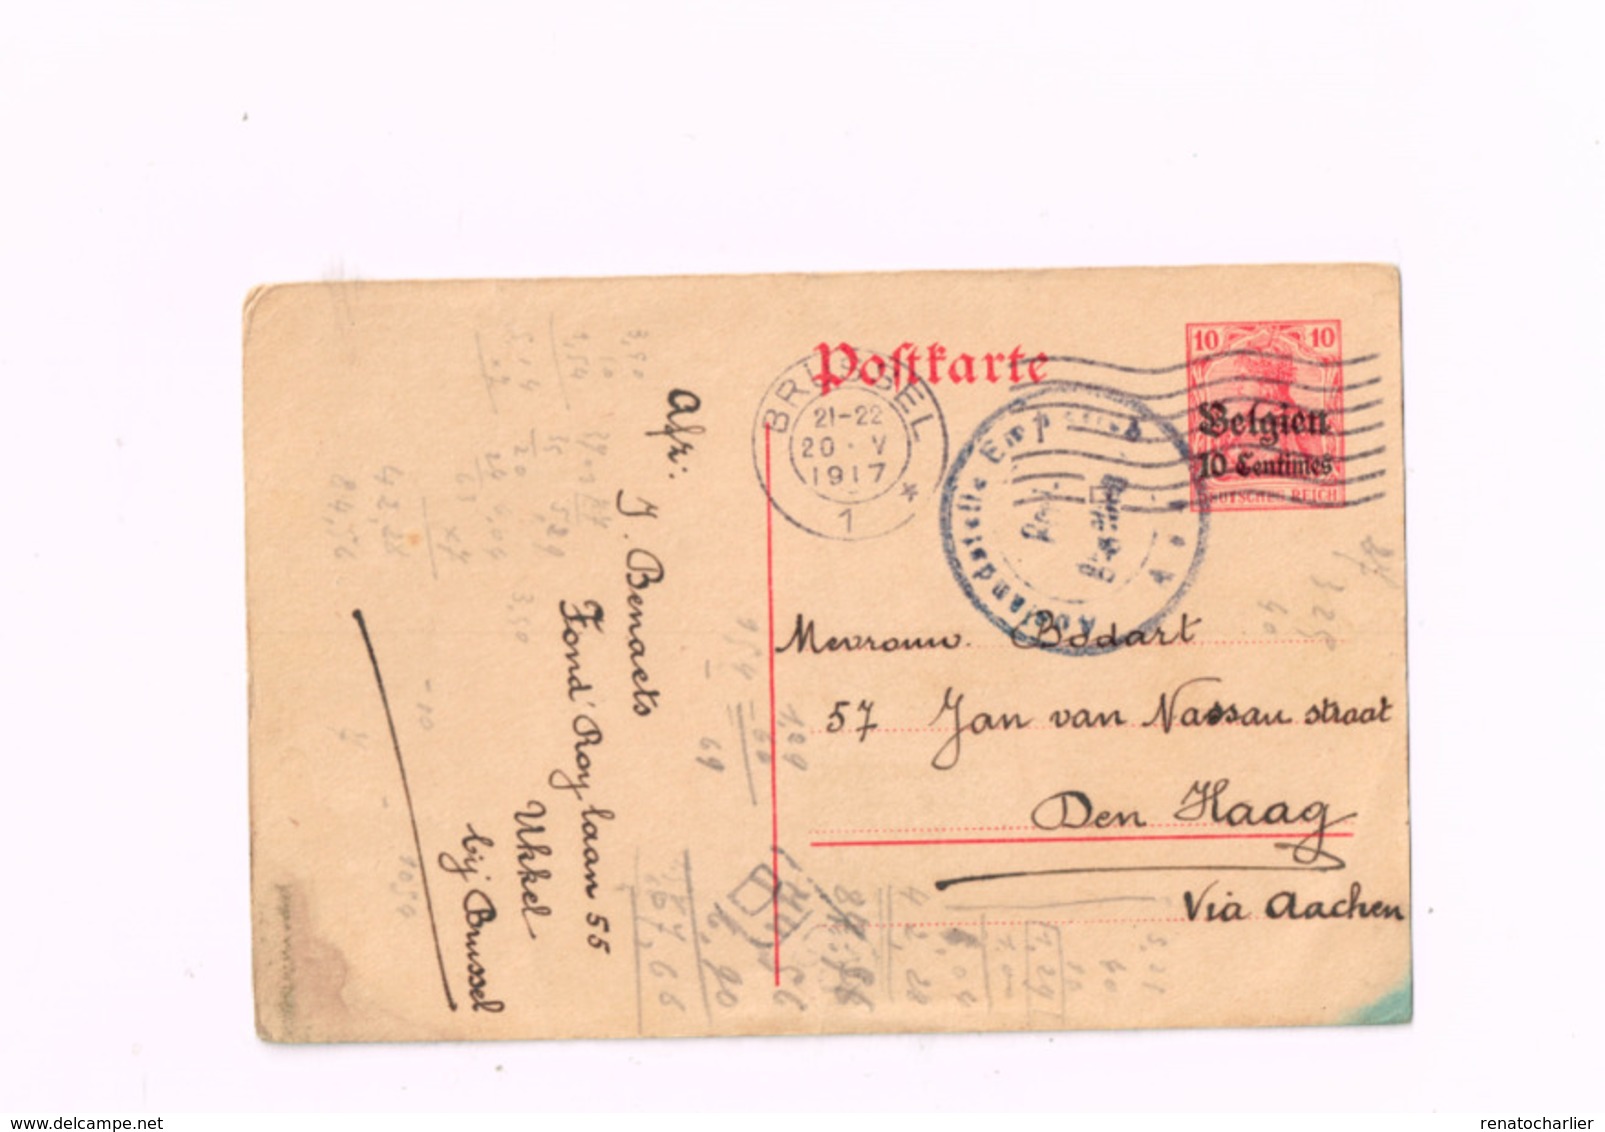 Entier Postal à 10 Centimes.Expédié De Bruxelles à Den Haag (Censure Emmerich) - Occupation Allemande